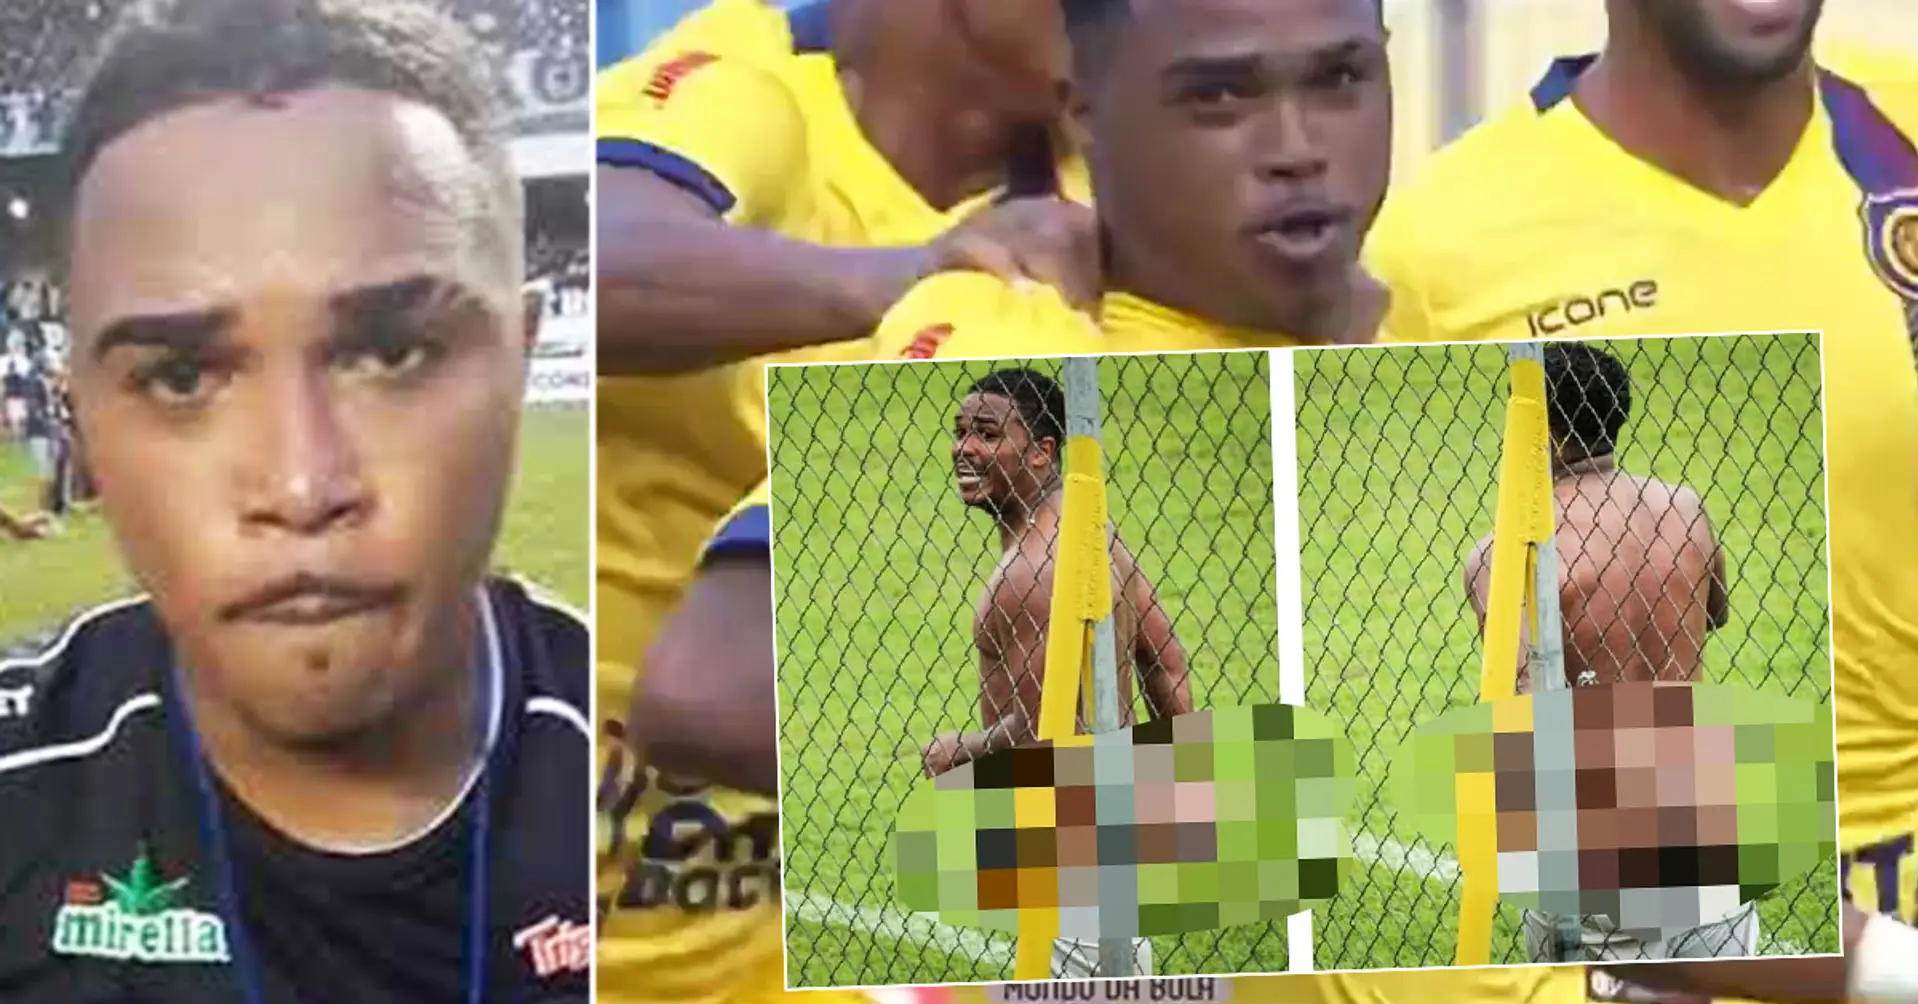 Un giocatore brasiliano ha agitato i genitali contro gli avversari, e poi ha mostrato il c**o: squalifica di 8 gare